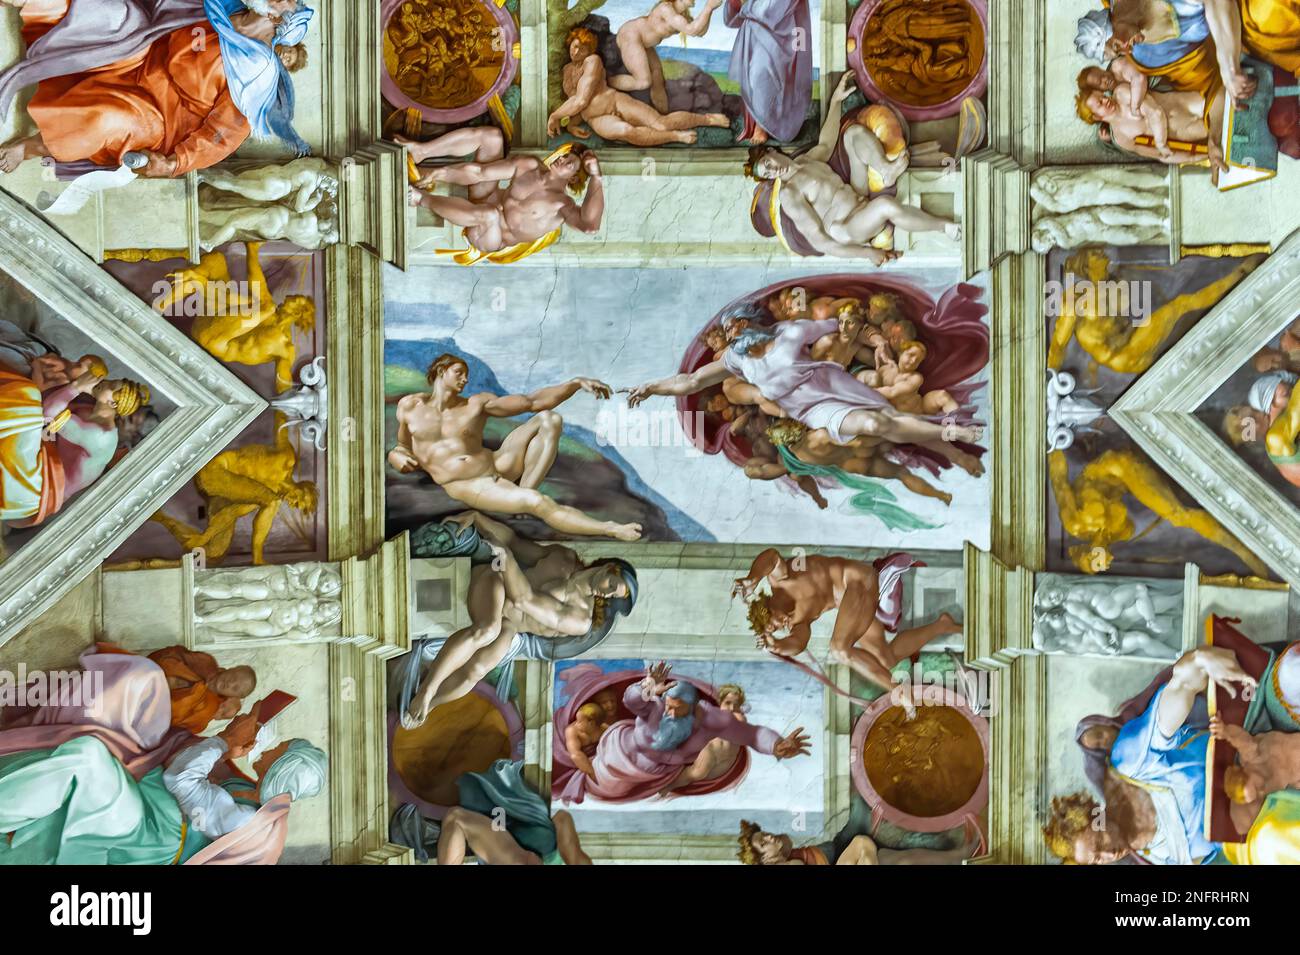 Roma Italia. Cappella Sistina di Michelangelo. La creazione di Adamo. Dicembre 2019 Foto Stock